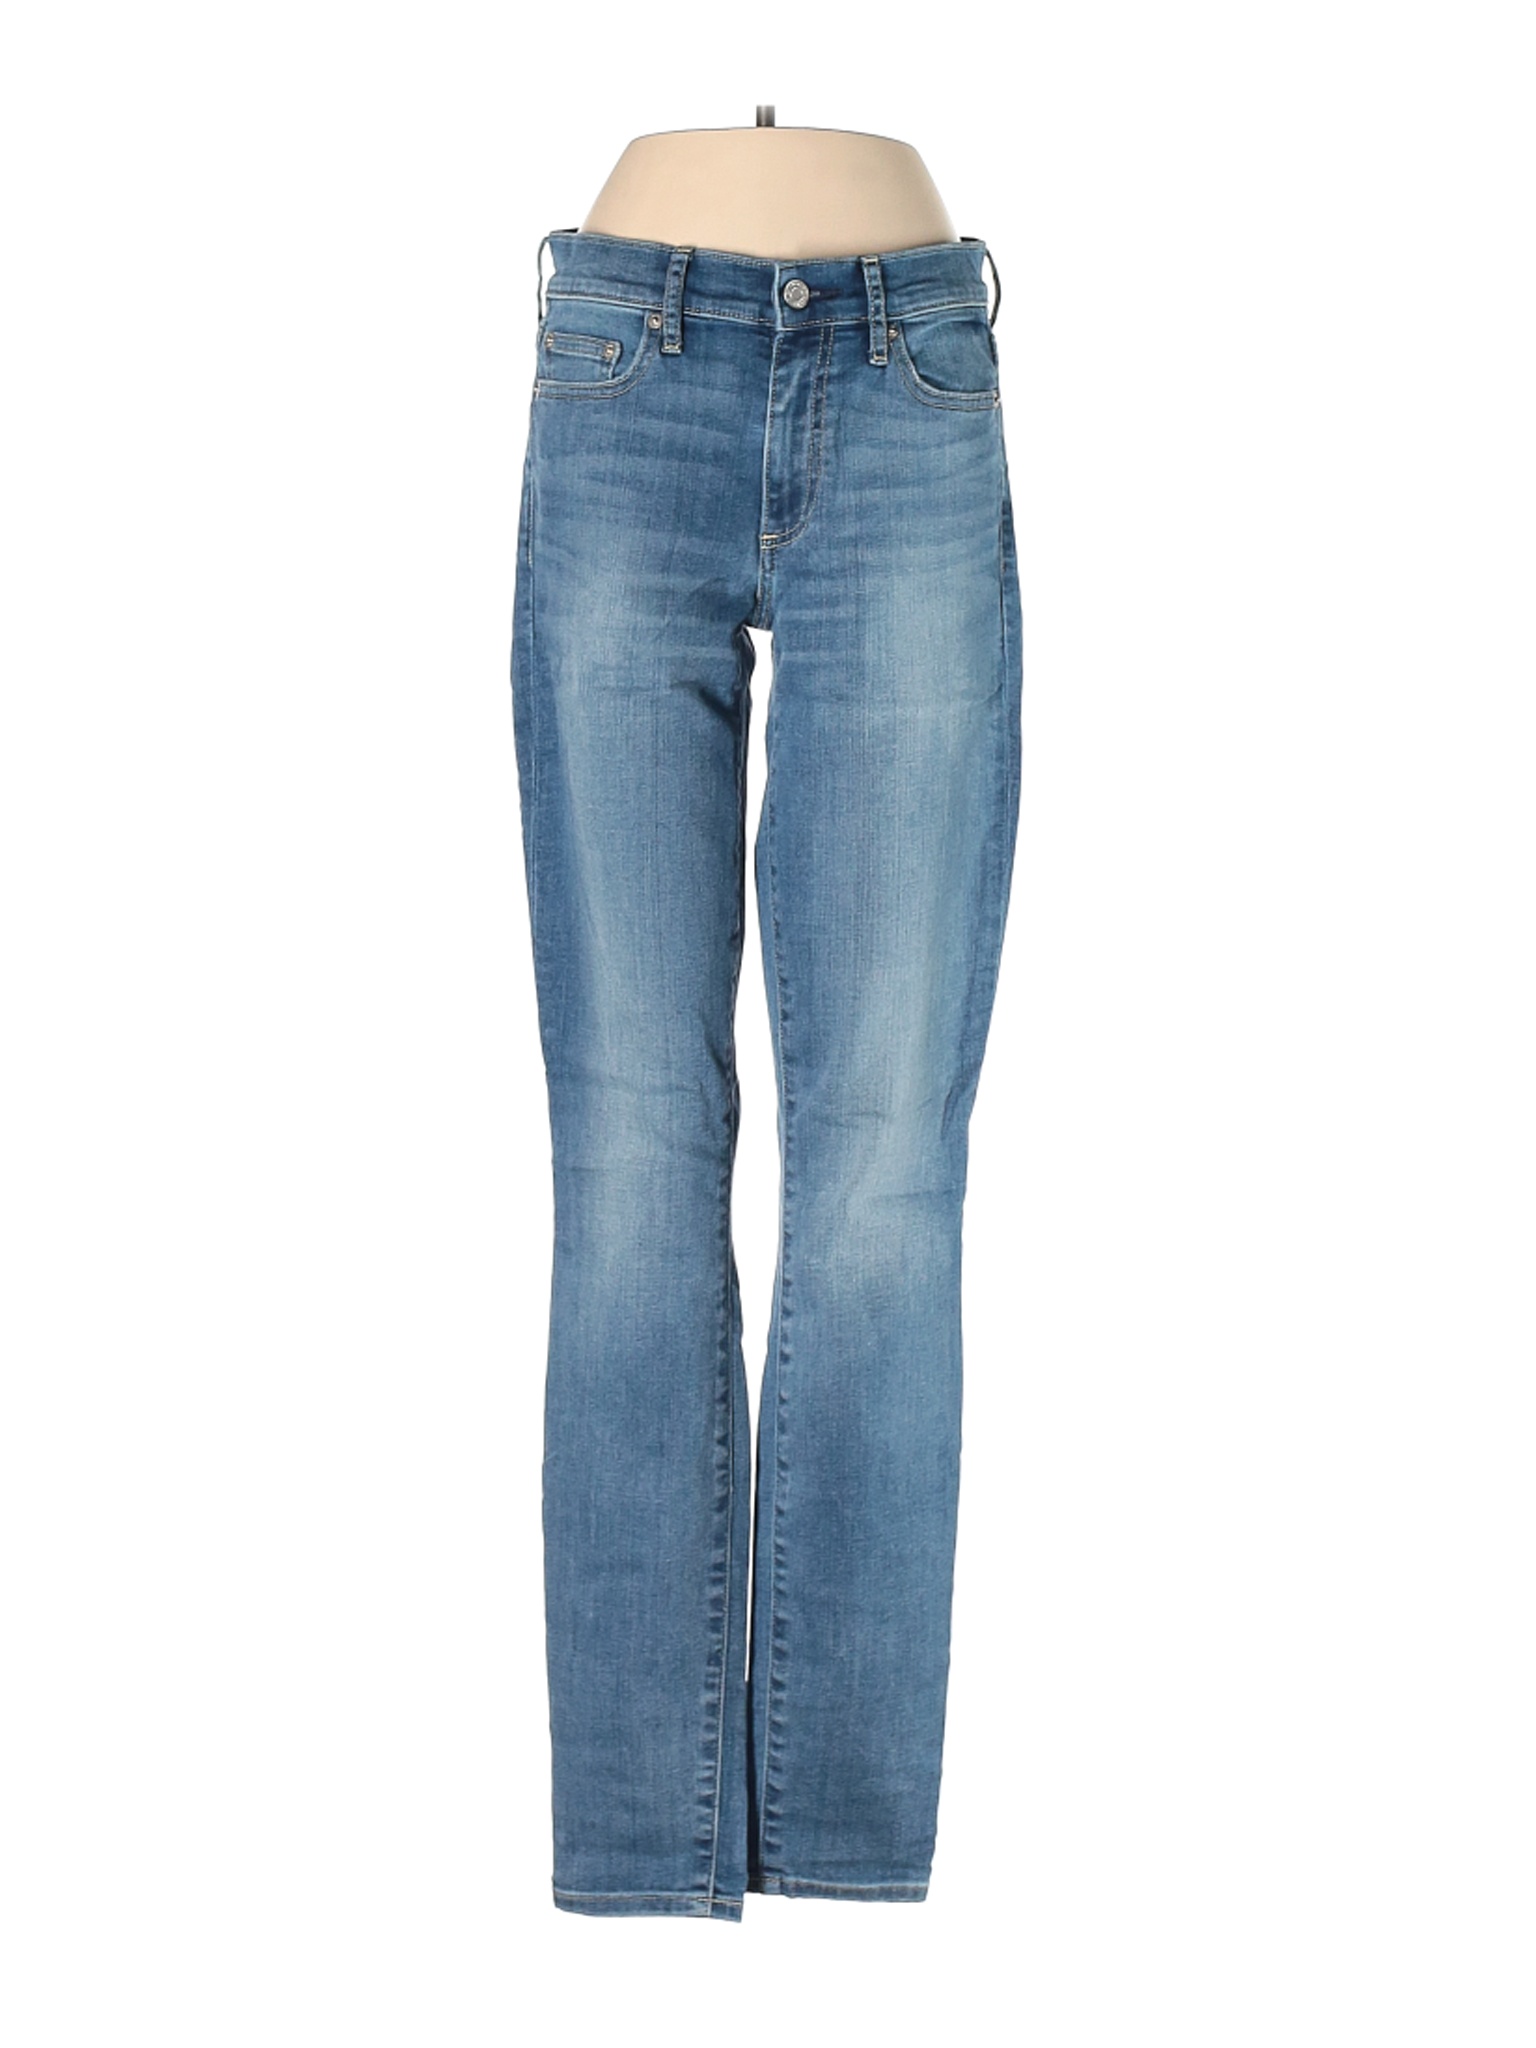 Gap Women Blue Jeans 27W | eBay